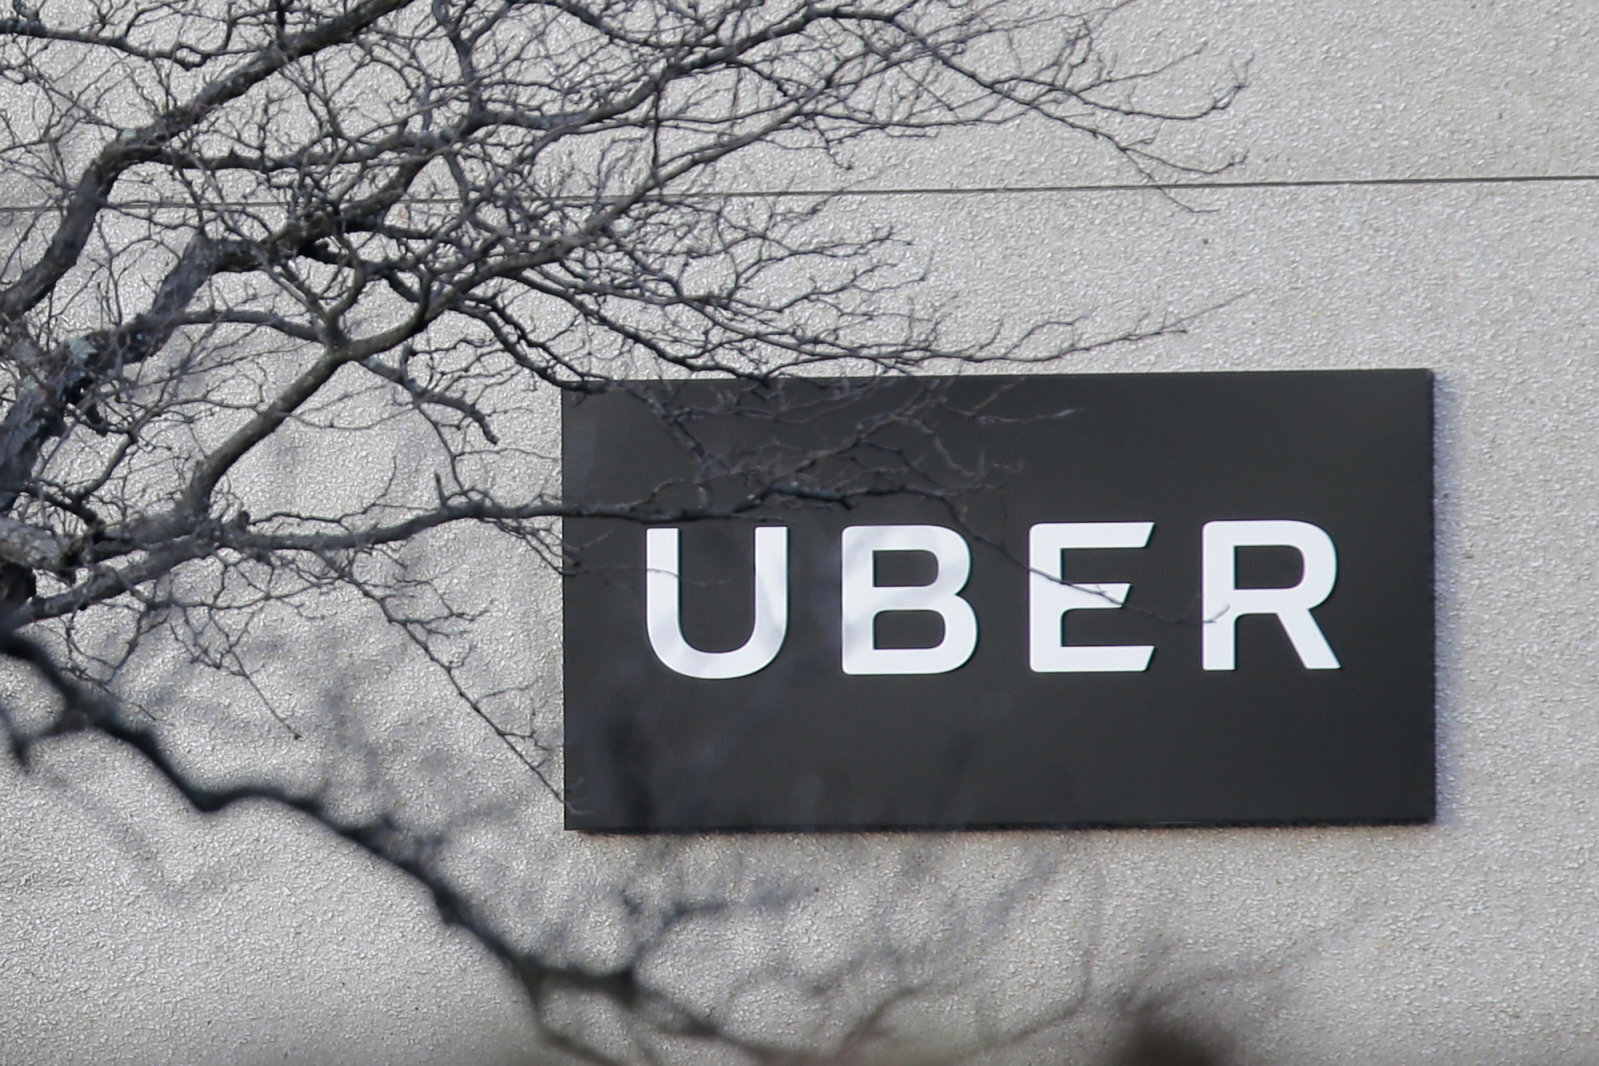 Η Uber έχασε την άδεια λειτουργίας της στο Λονδίνο